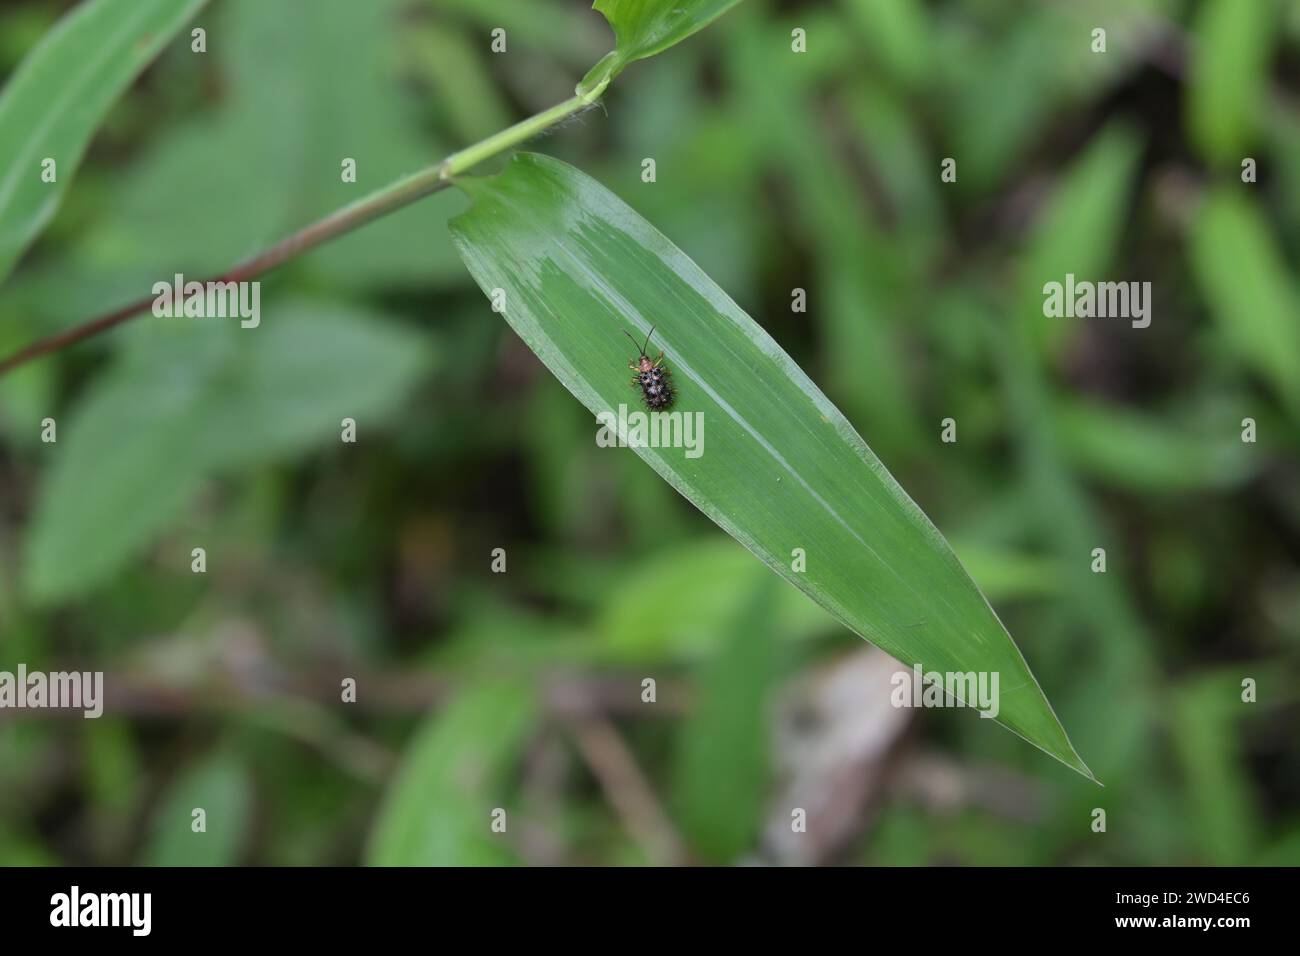 Vista dall'alto di un piccolo coleottero spinoso (riso hispa) sulla superficie di una foglia d'erba in un prato. Le minuscole spine taglienti, comprese le ali, sono presen Foto Stock